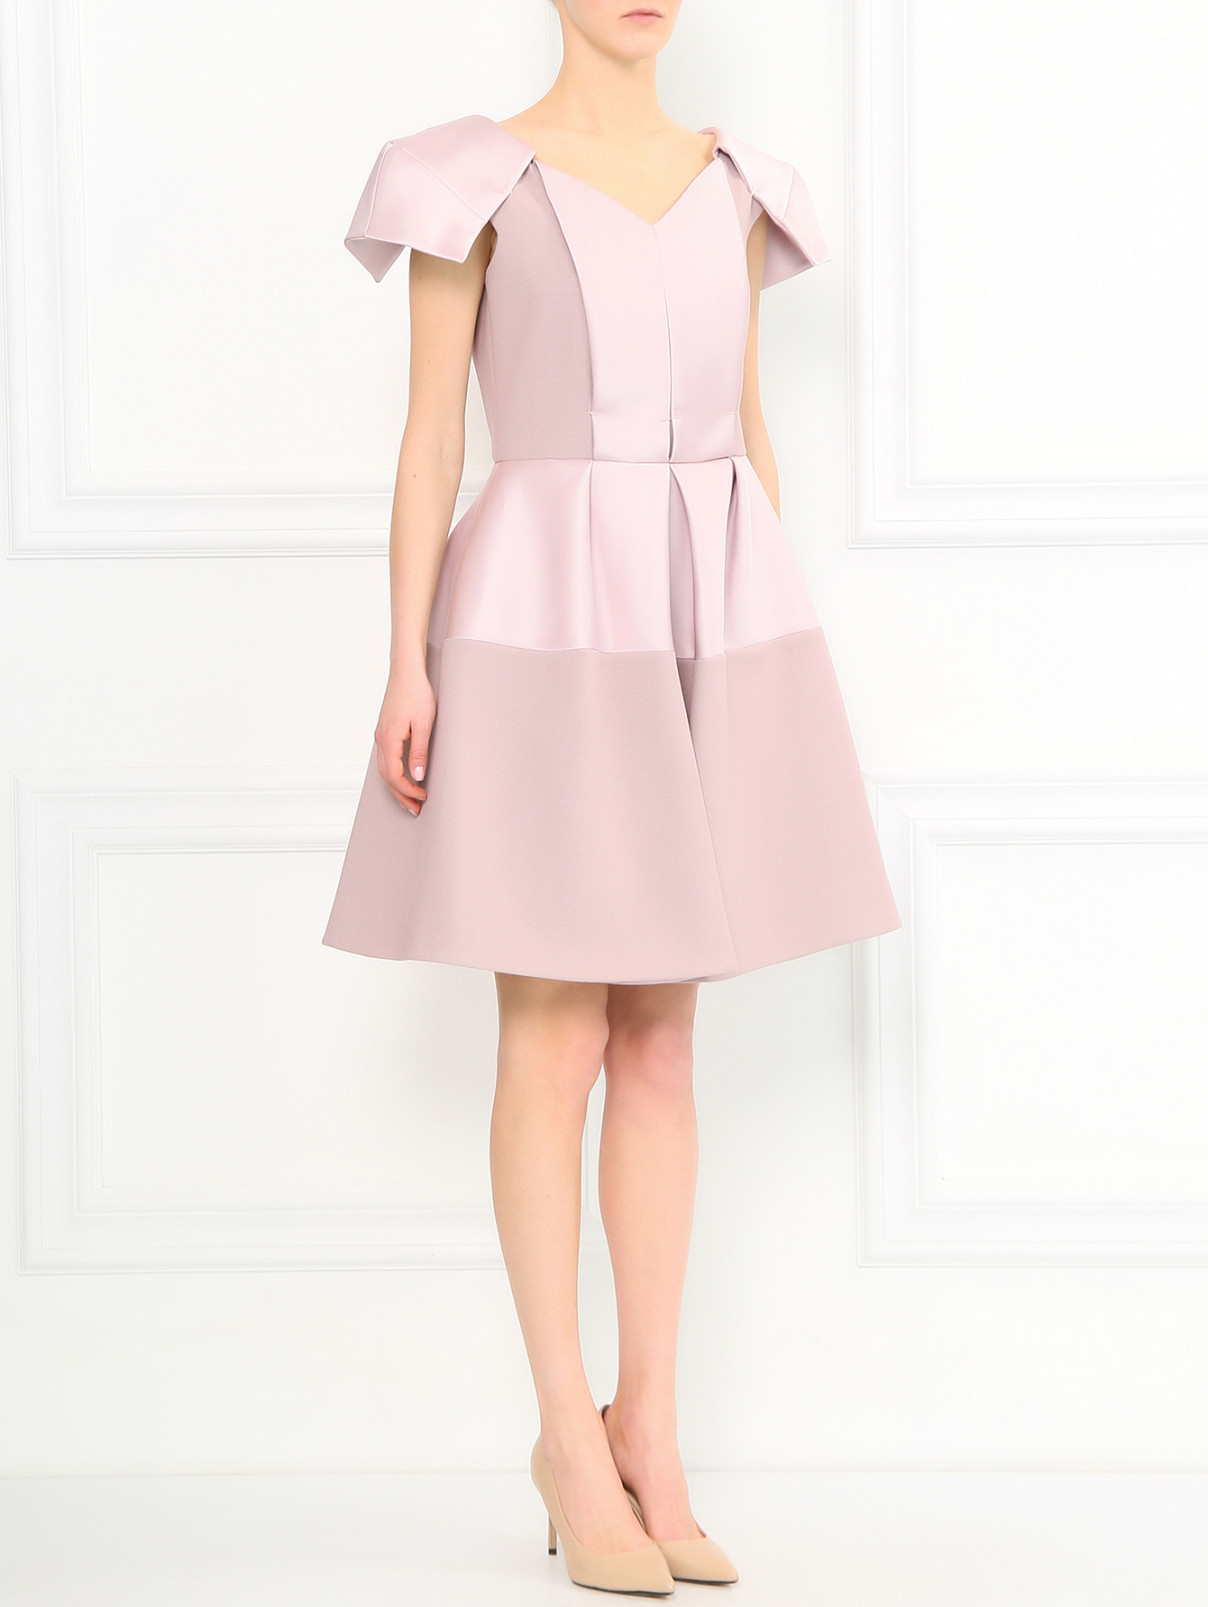 Платье-мини с объемными рукавами Dice Kayek  –  Модель Общий вид  – Цвет:  Фиолетовый